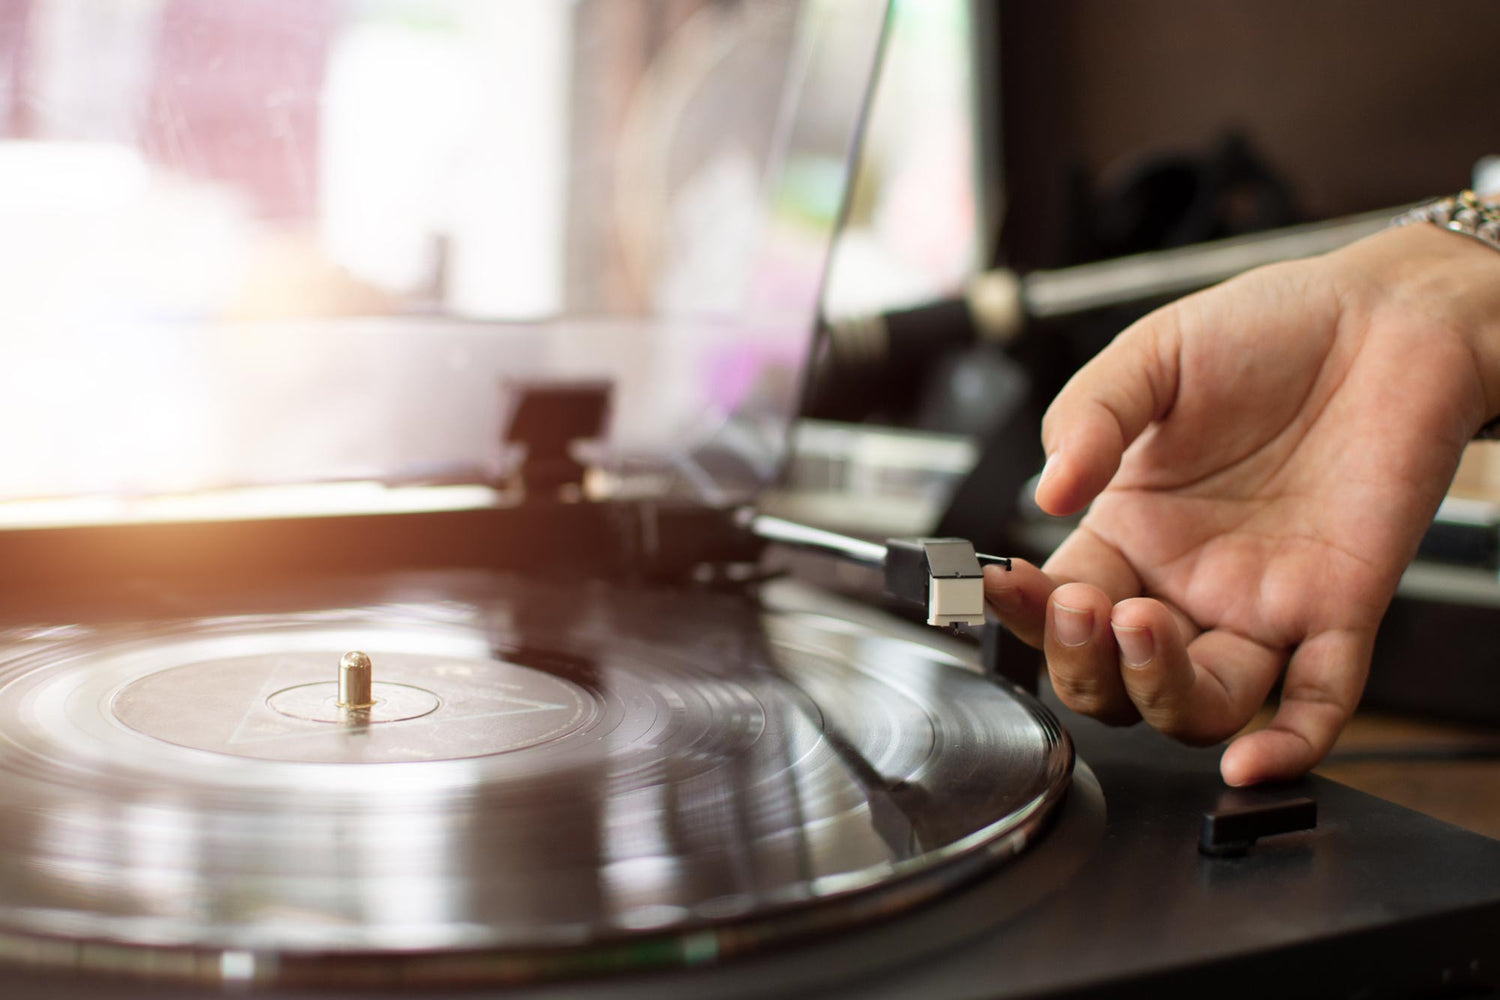 Vinyl sales tallied their biggest numbers in history